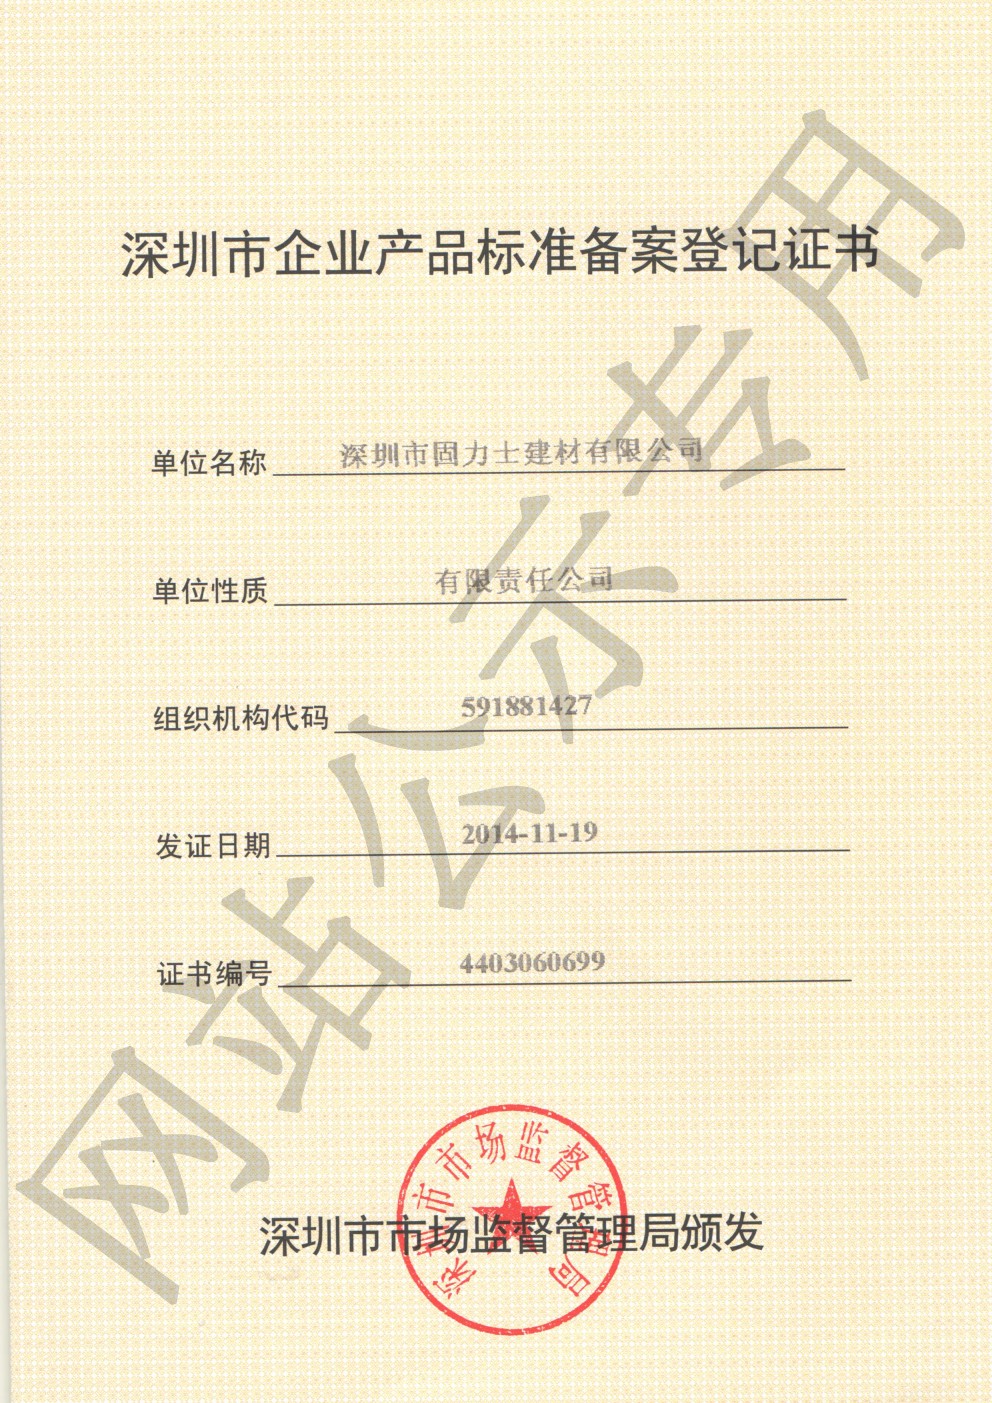 黔西企业产品标准登记证书